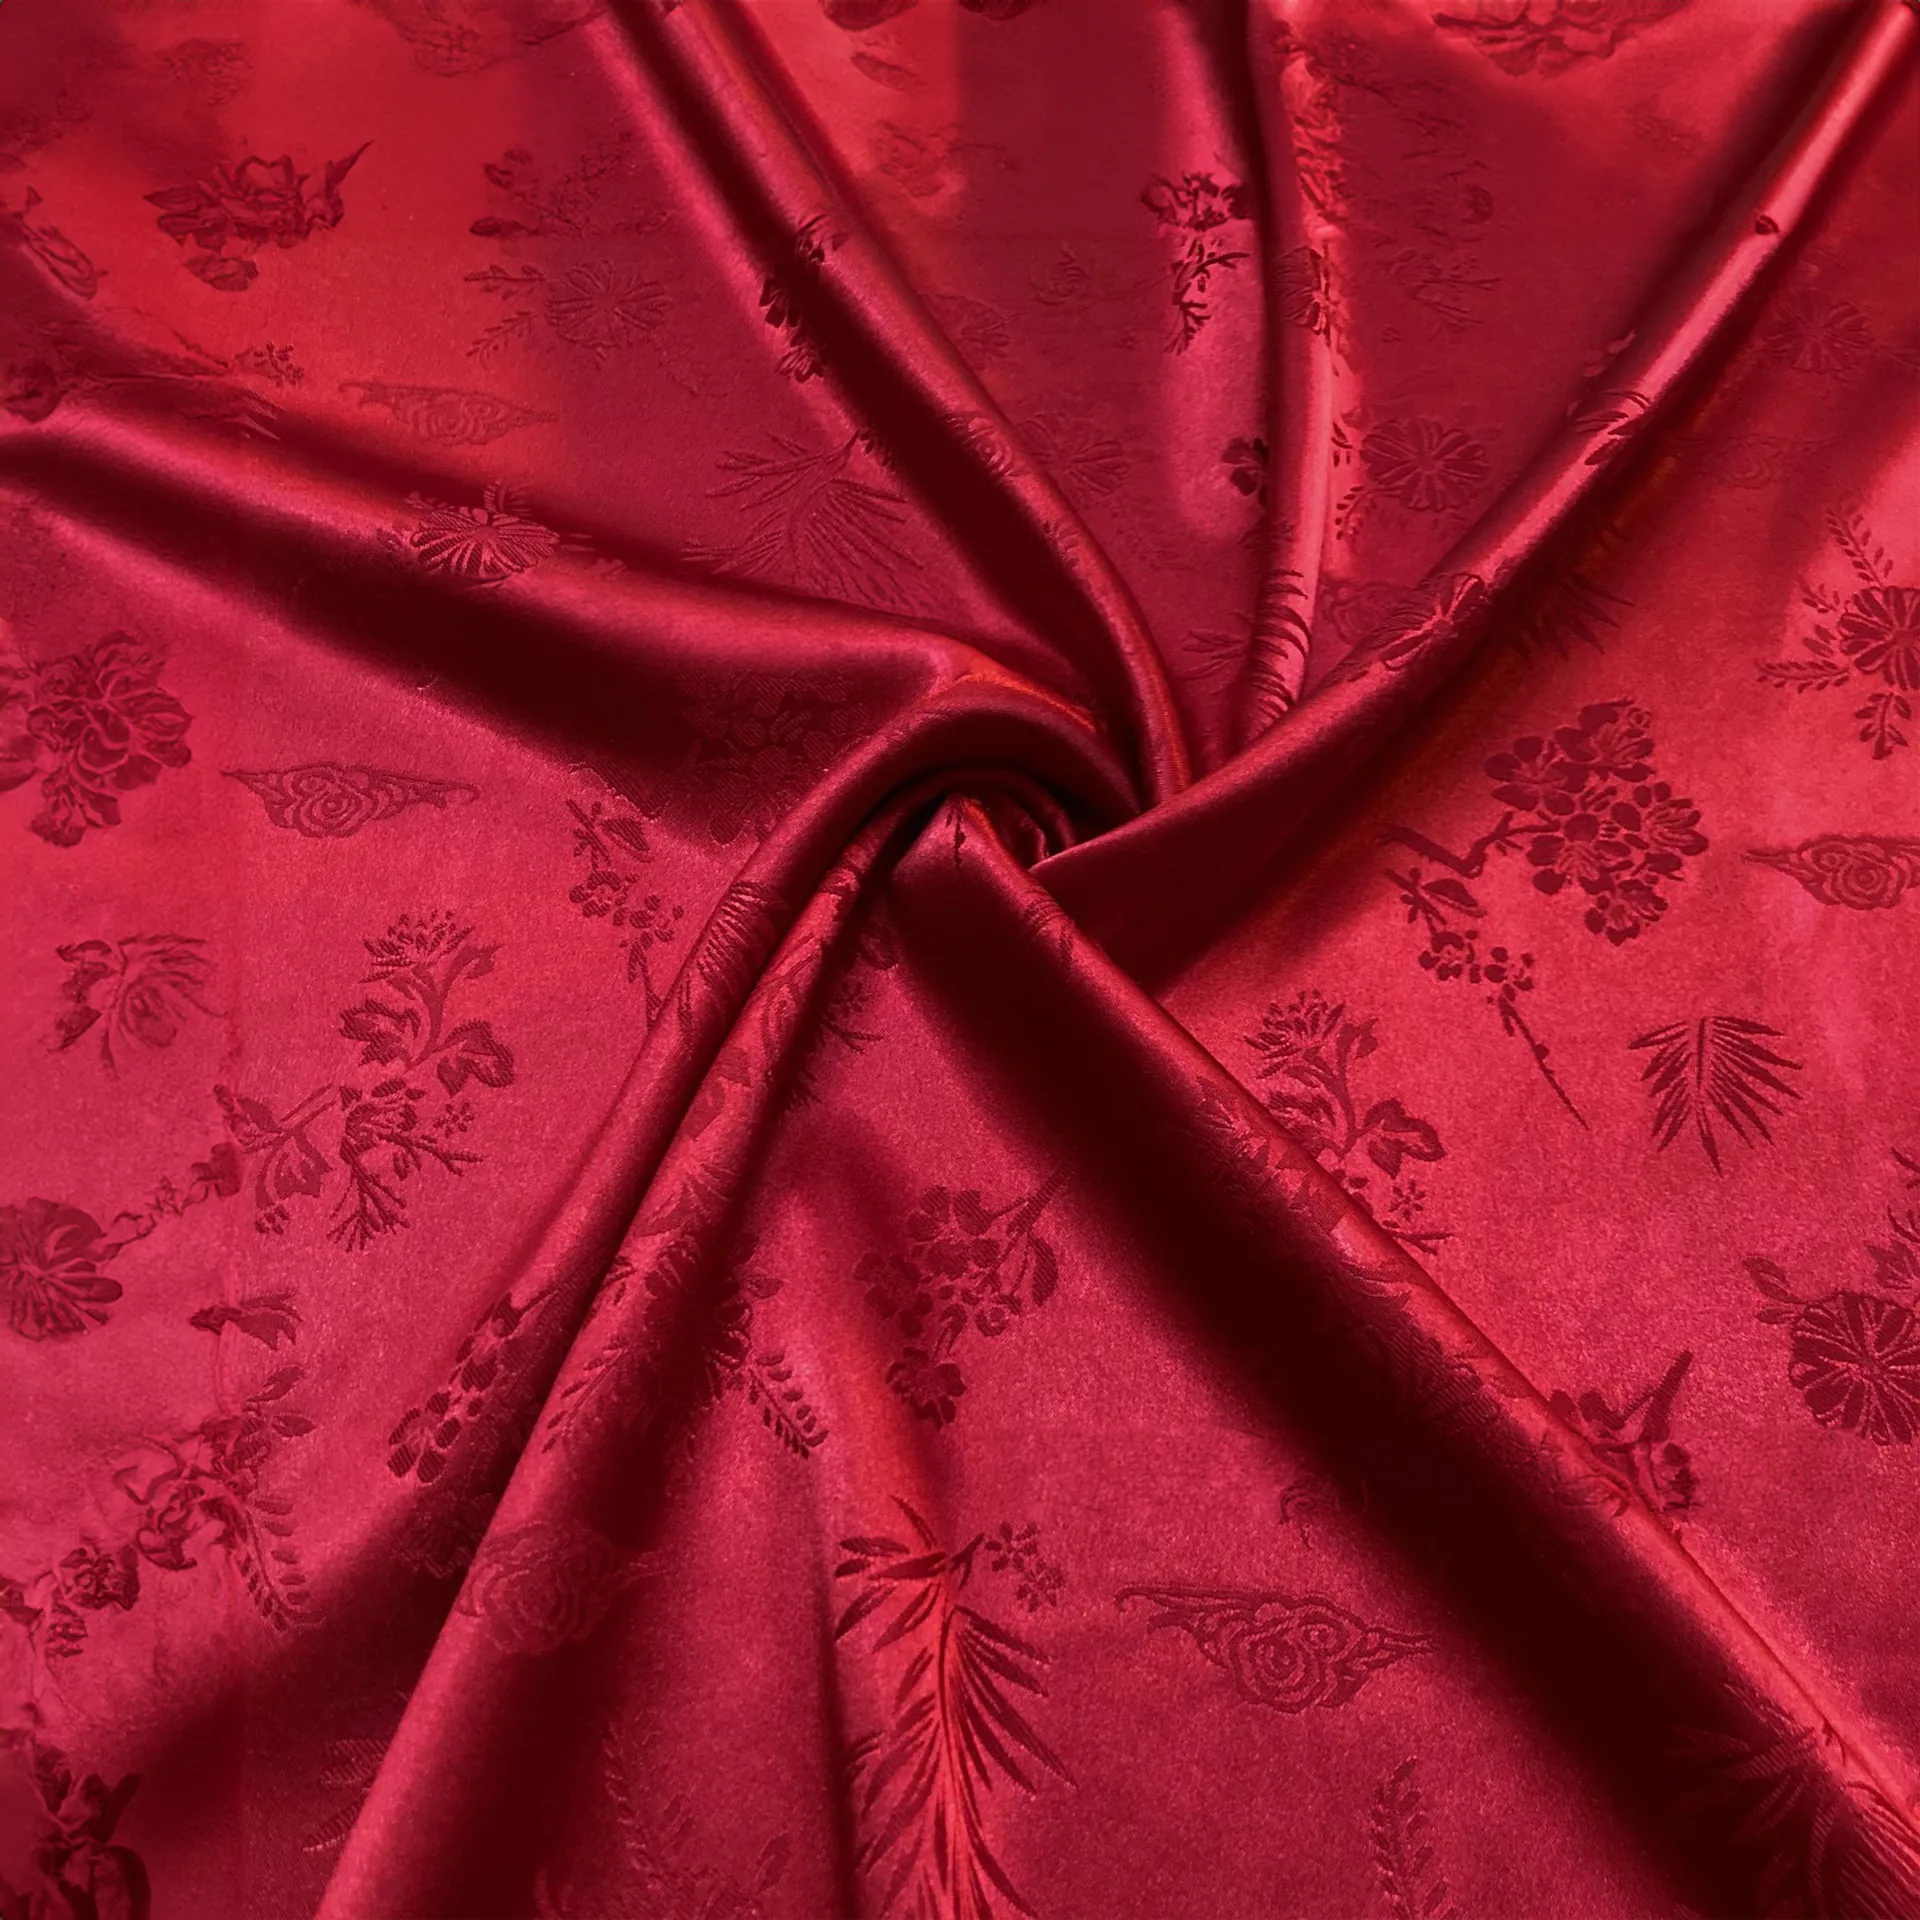 Imitated Silk Satin Jacquard Apparel Craft Fabric01